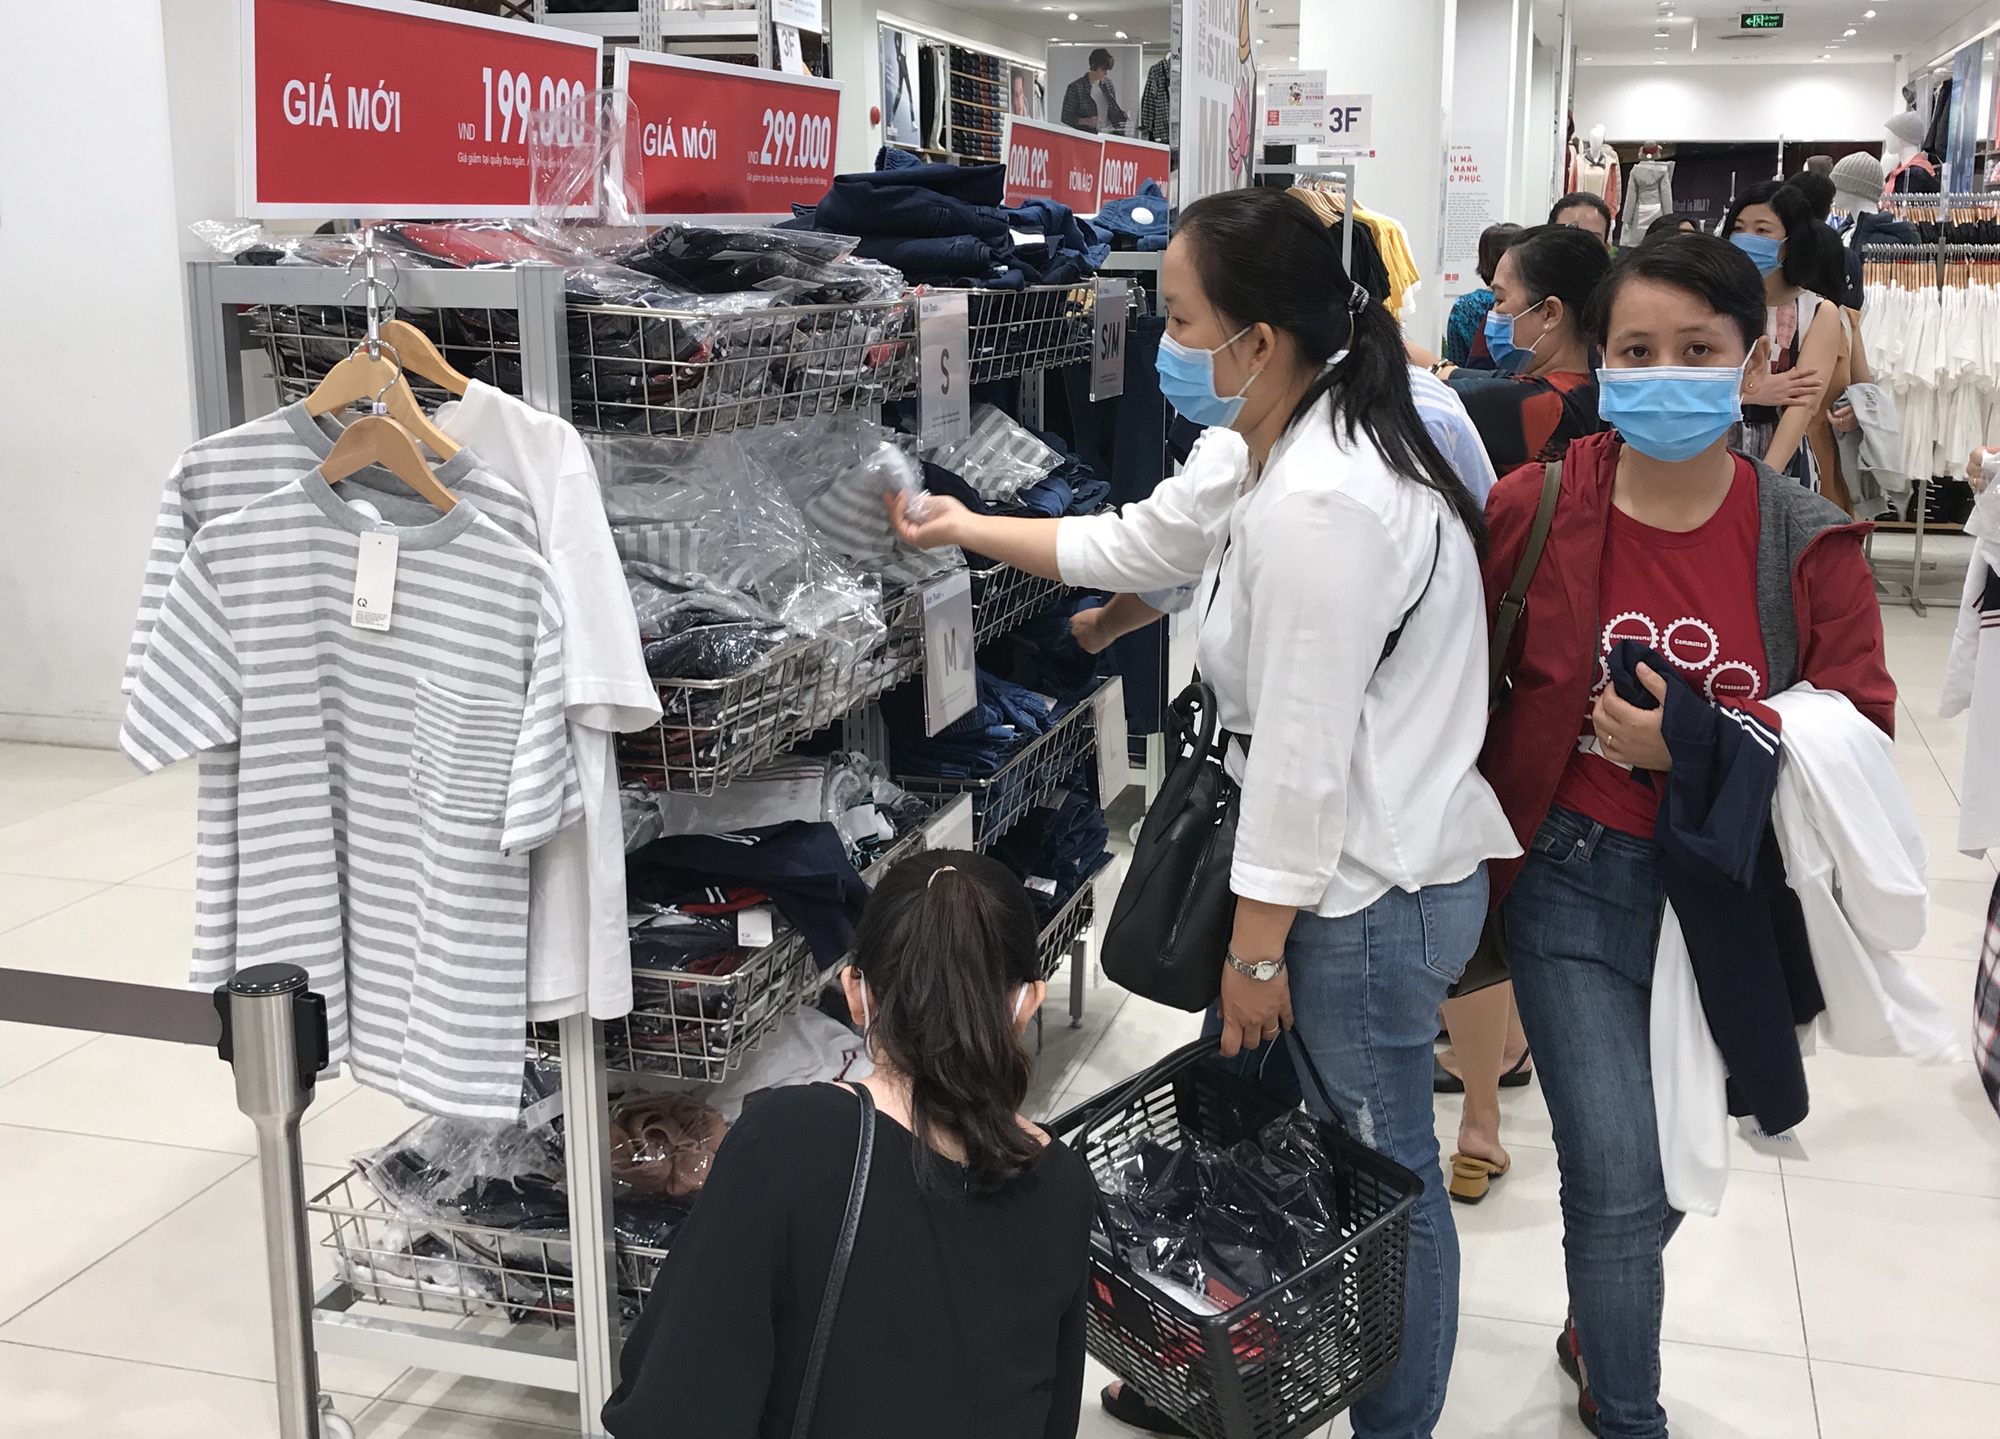 Black Friday: Hàng hiệu Sài Gòn bắt đầu giảm sốc 70%, có trung tâm thương mại tuyên bố mở cửa đến nửa đêm - Ảnh 7.